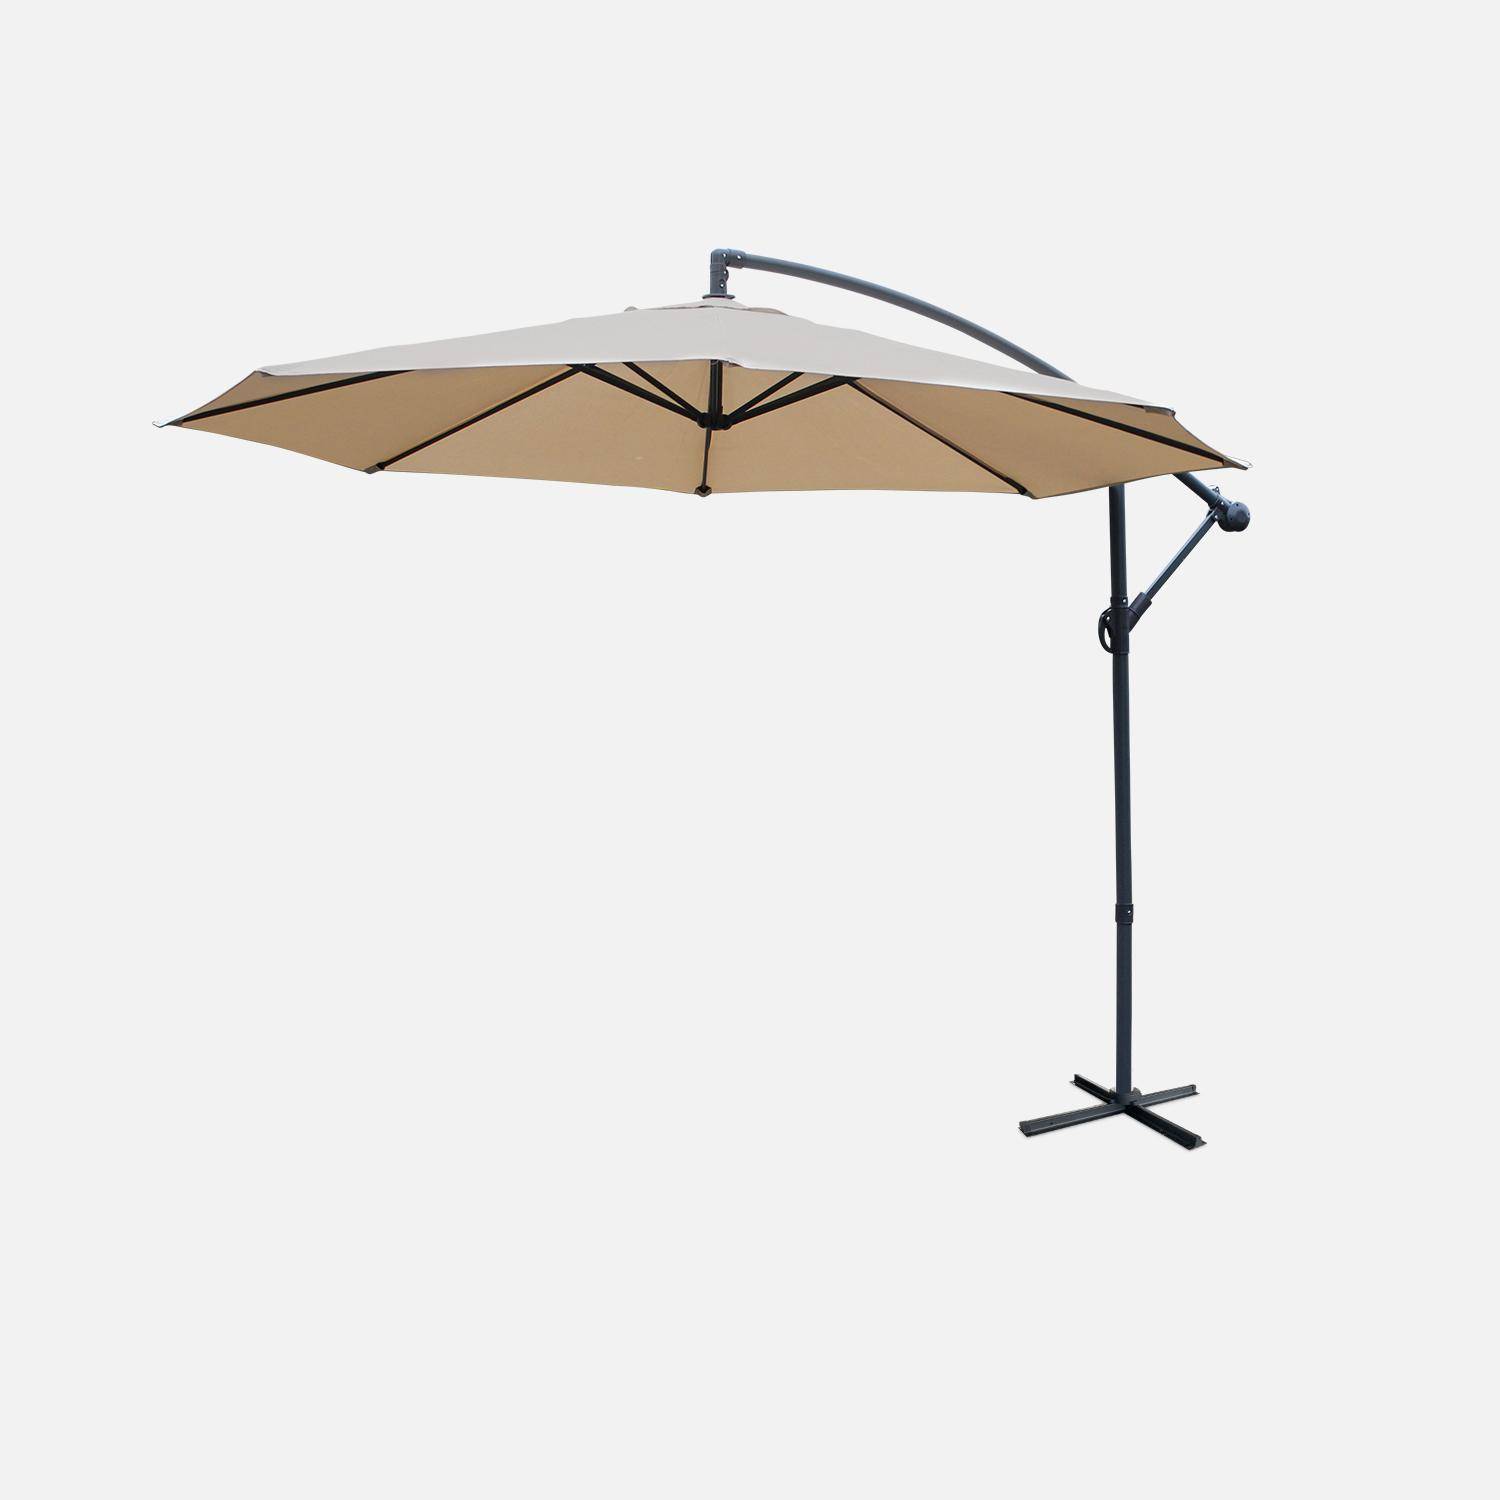 Paraguas redondo 3x3m - Hardelot - Beige - Manivela antirretorno | Tejido impermeable | Fácil de usar Photo2